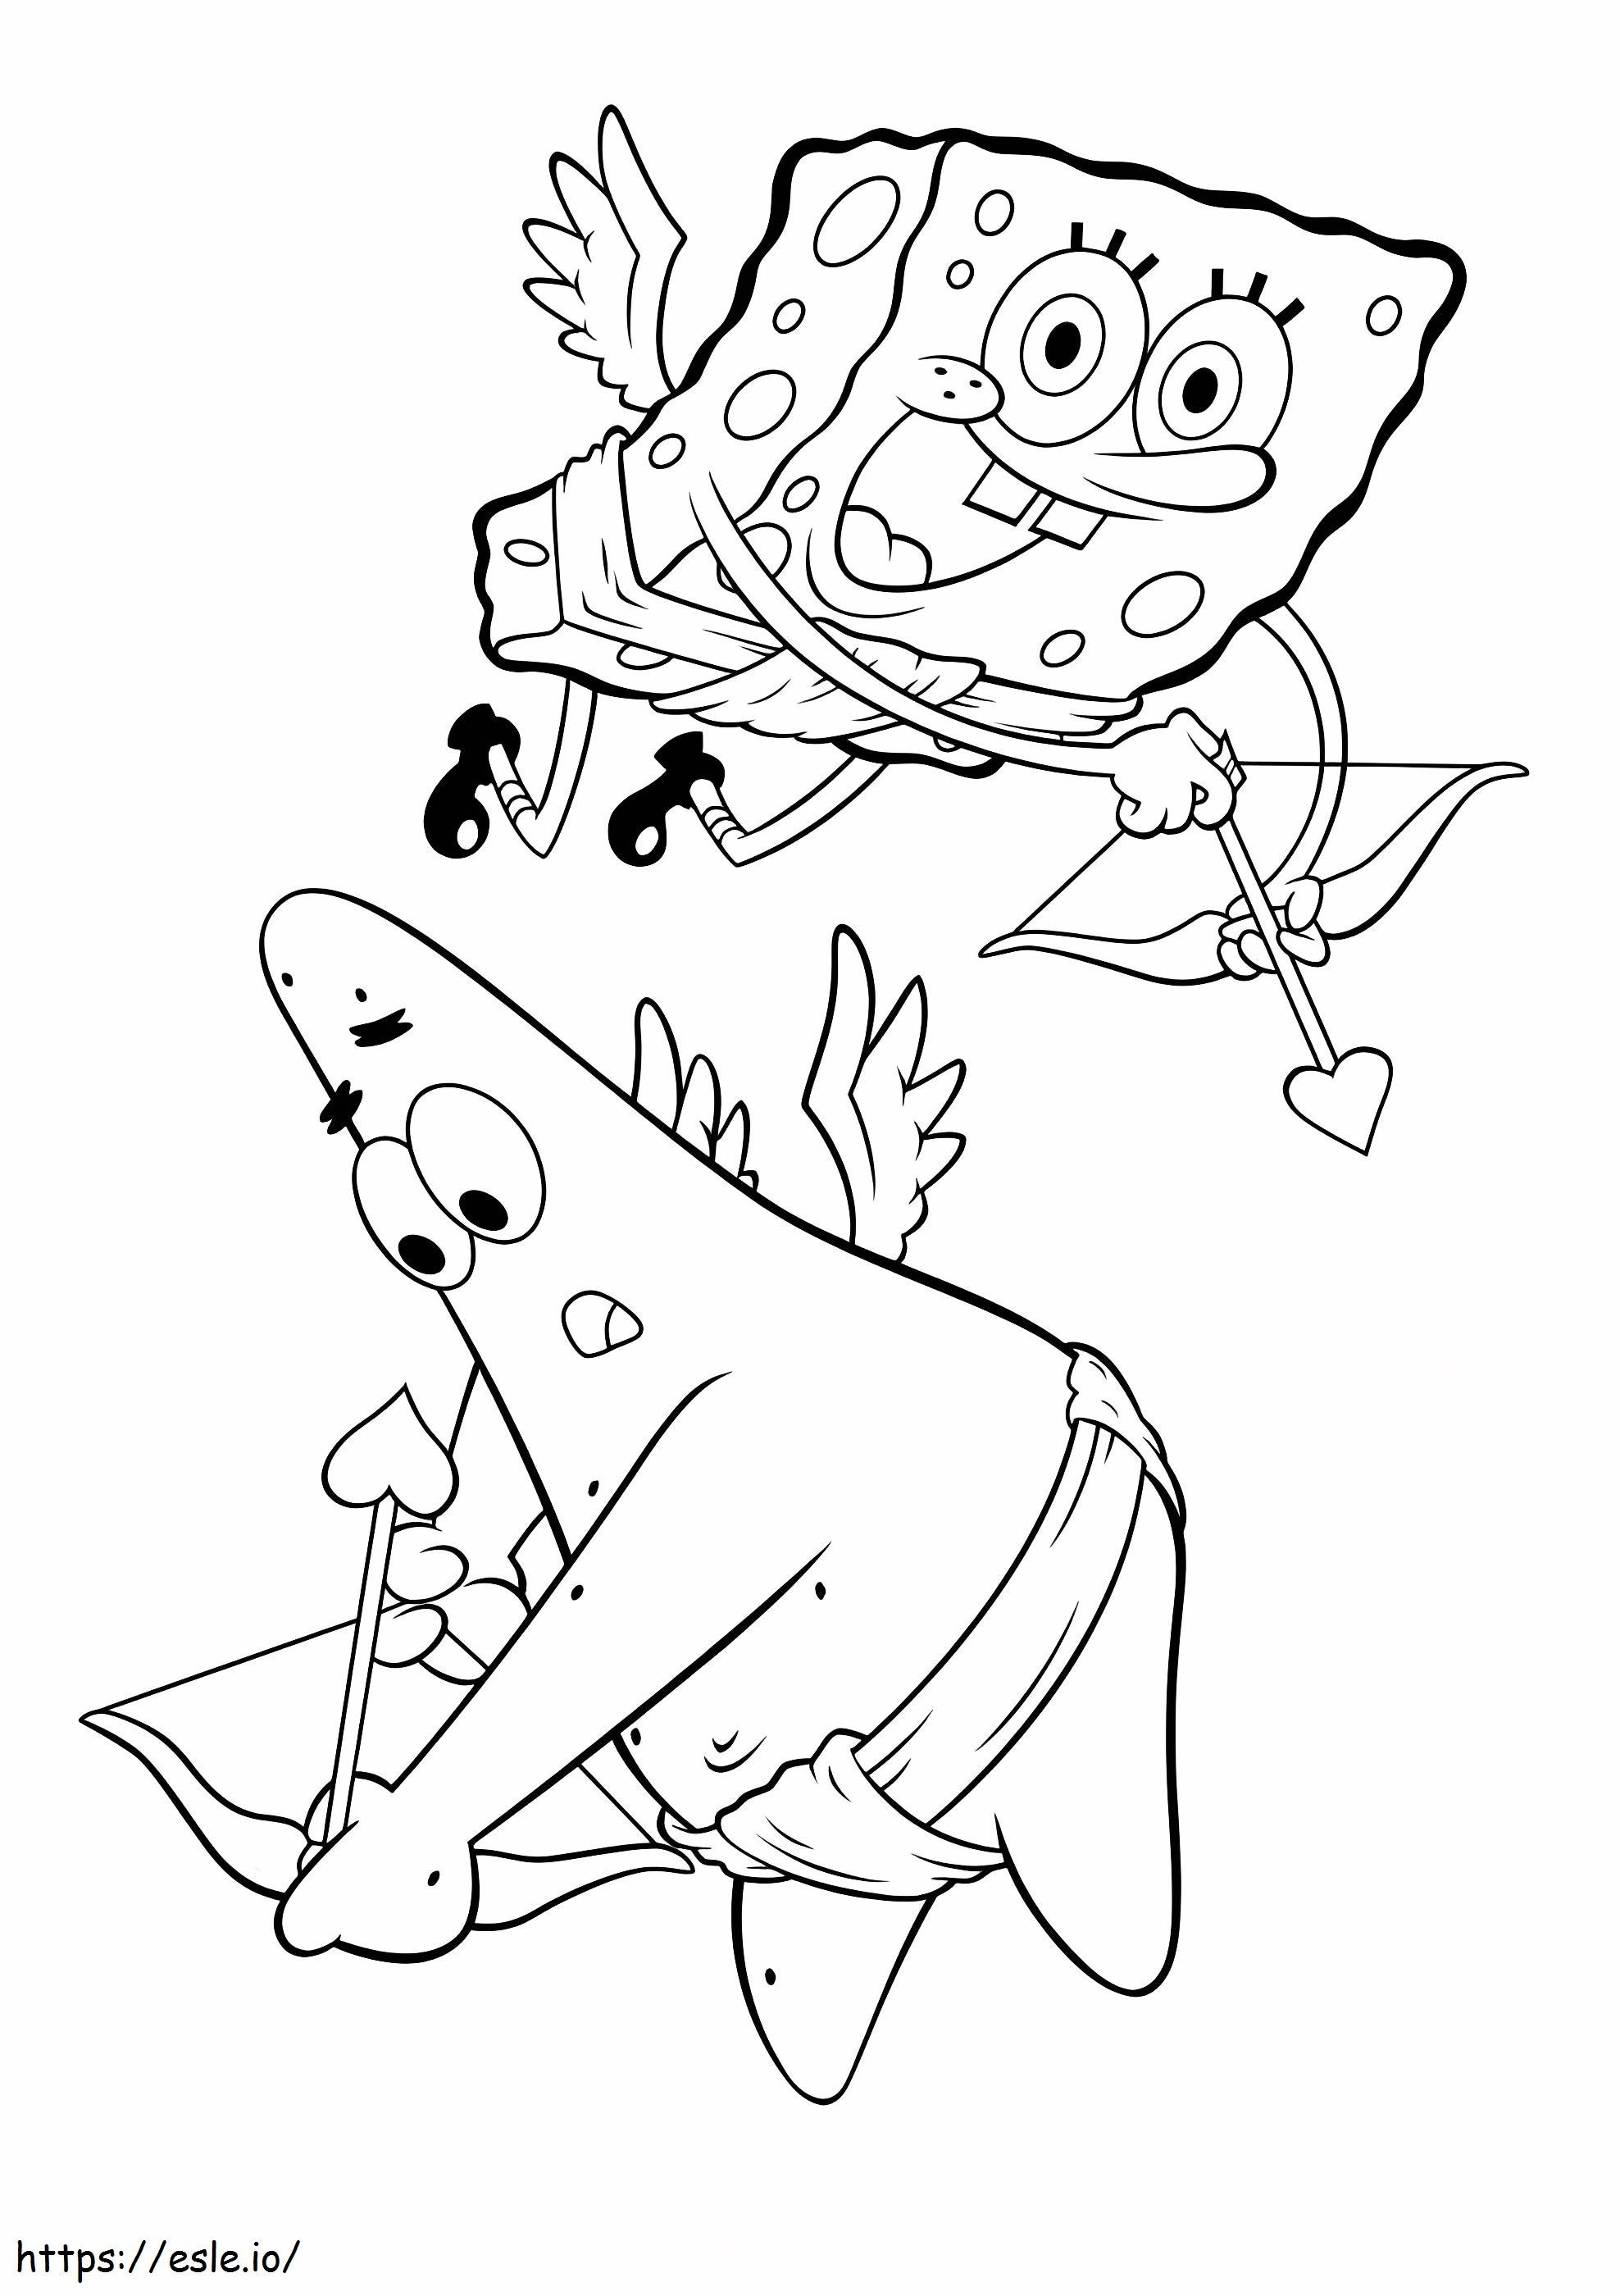 Patrick Star und Spongebob Amor ausmalbilder